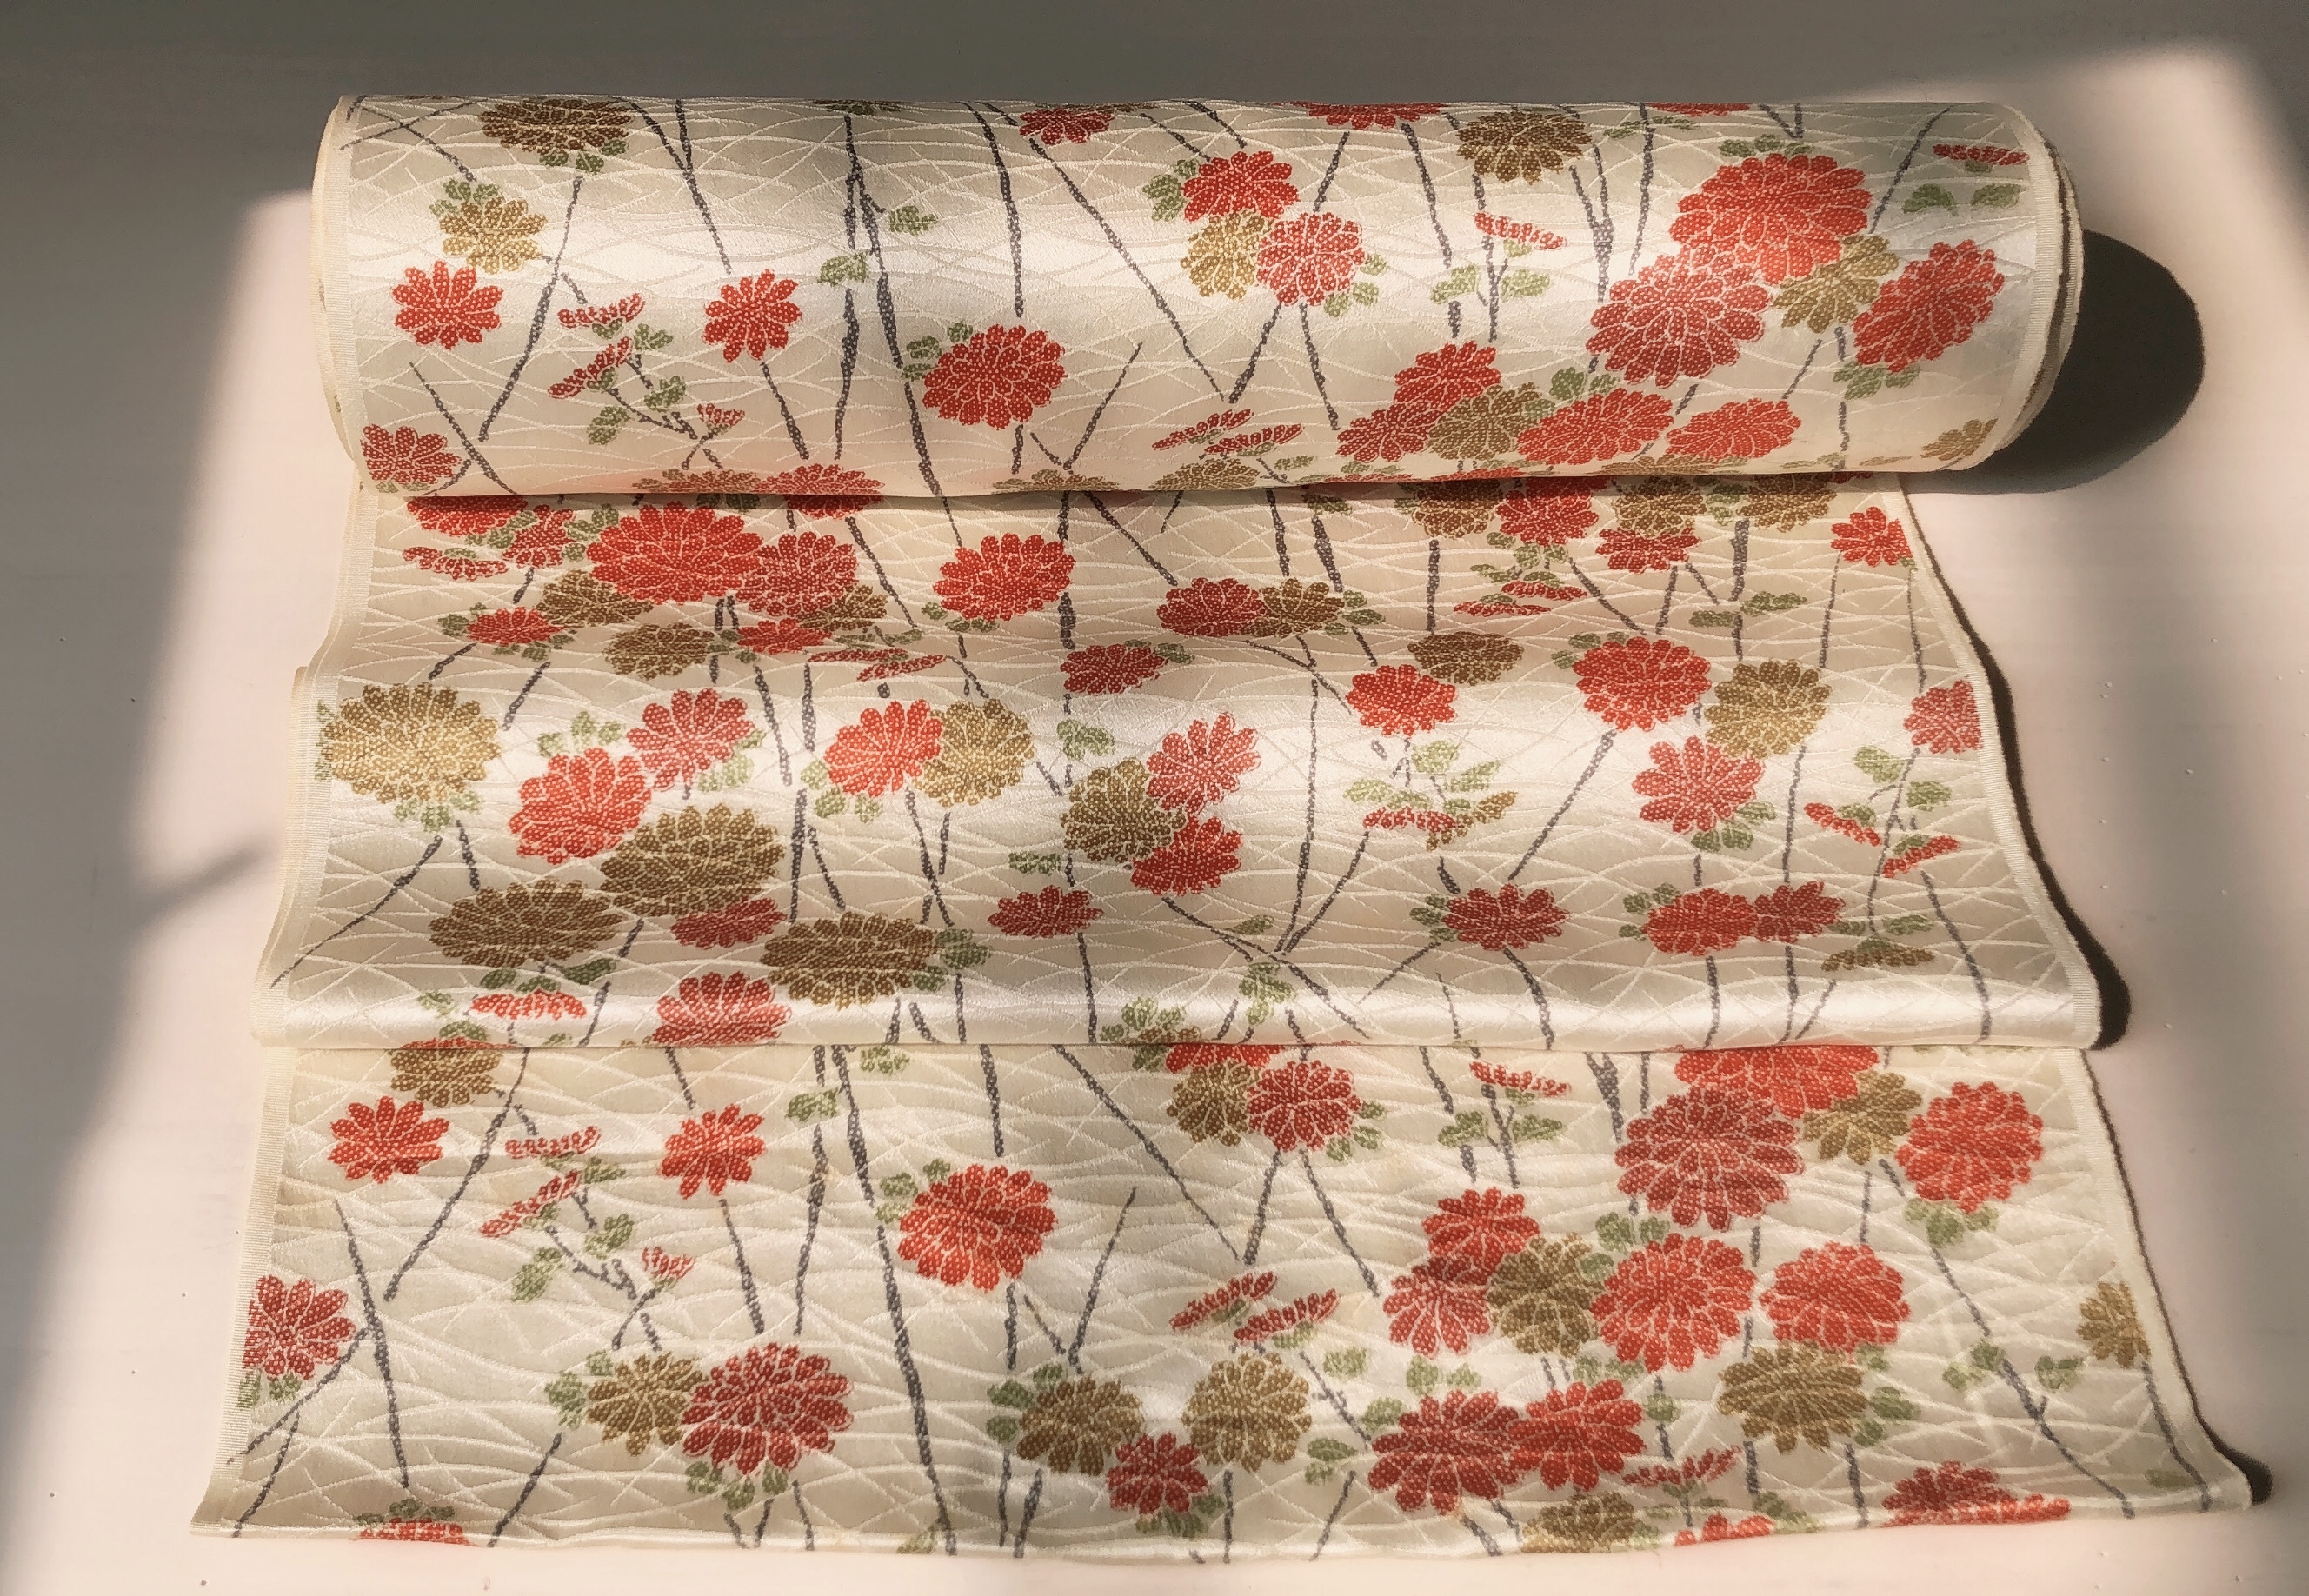 小紋 着物正絹100 羽織にもなるロングワンピース 一枚限定 Iichi ハンドメイド クラフト作品 手仕事品の通販